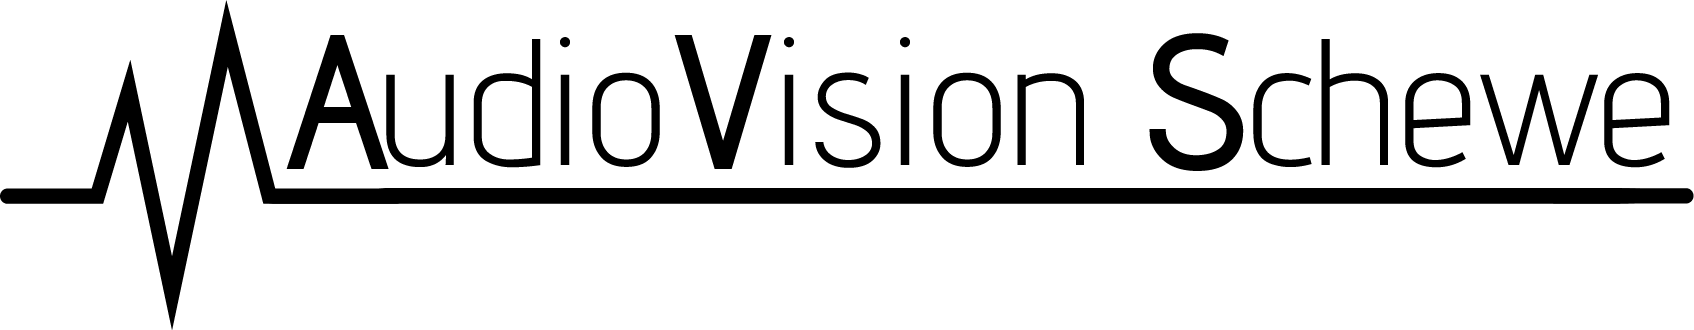 AudioVision Schewe-Logo